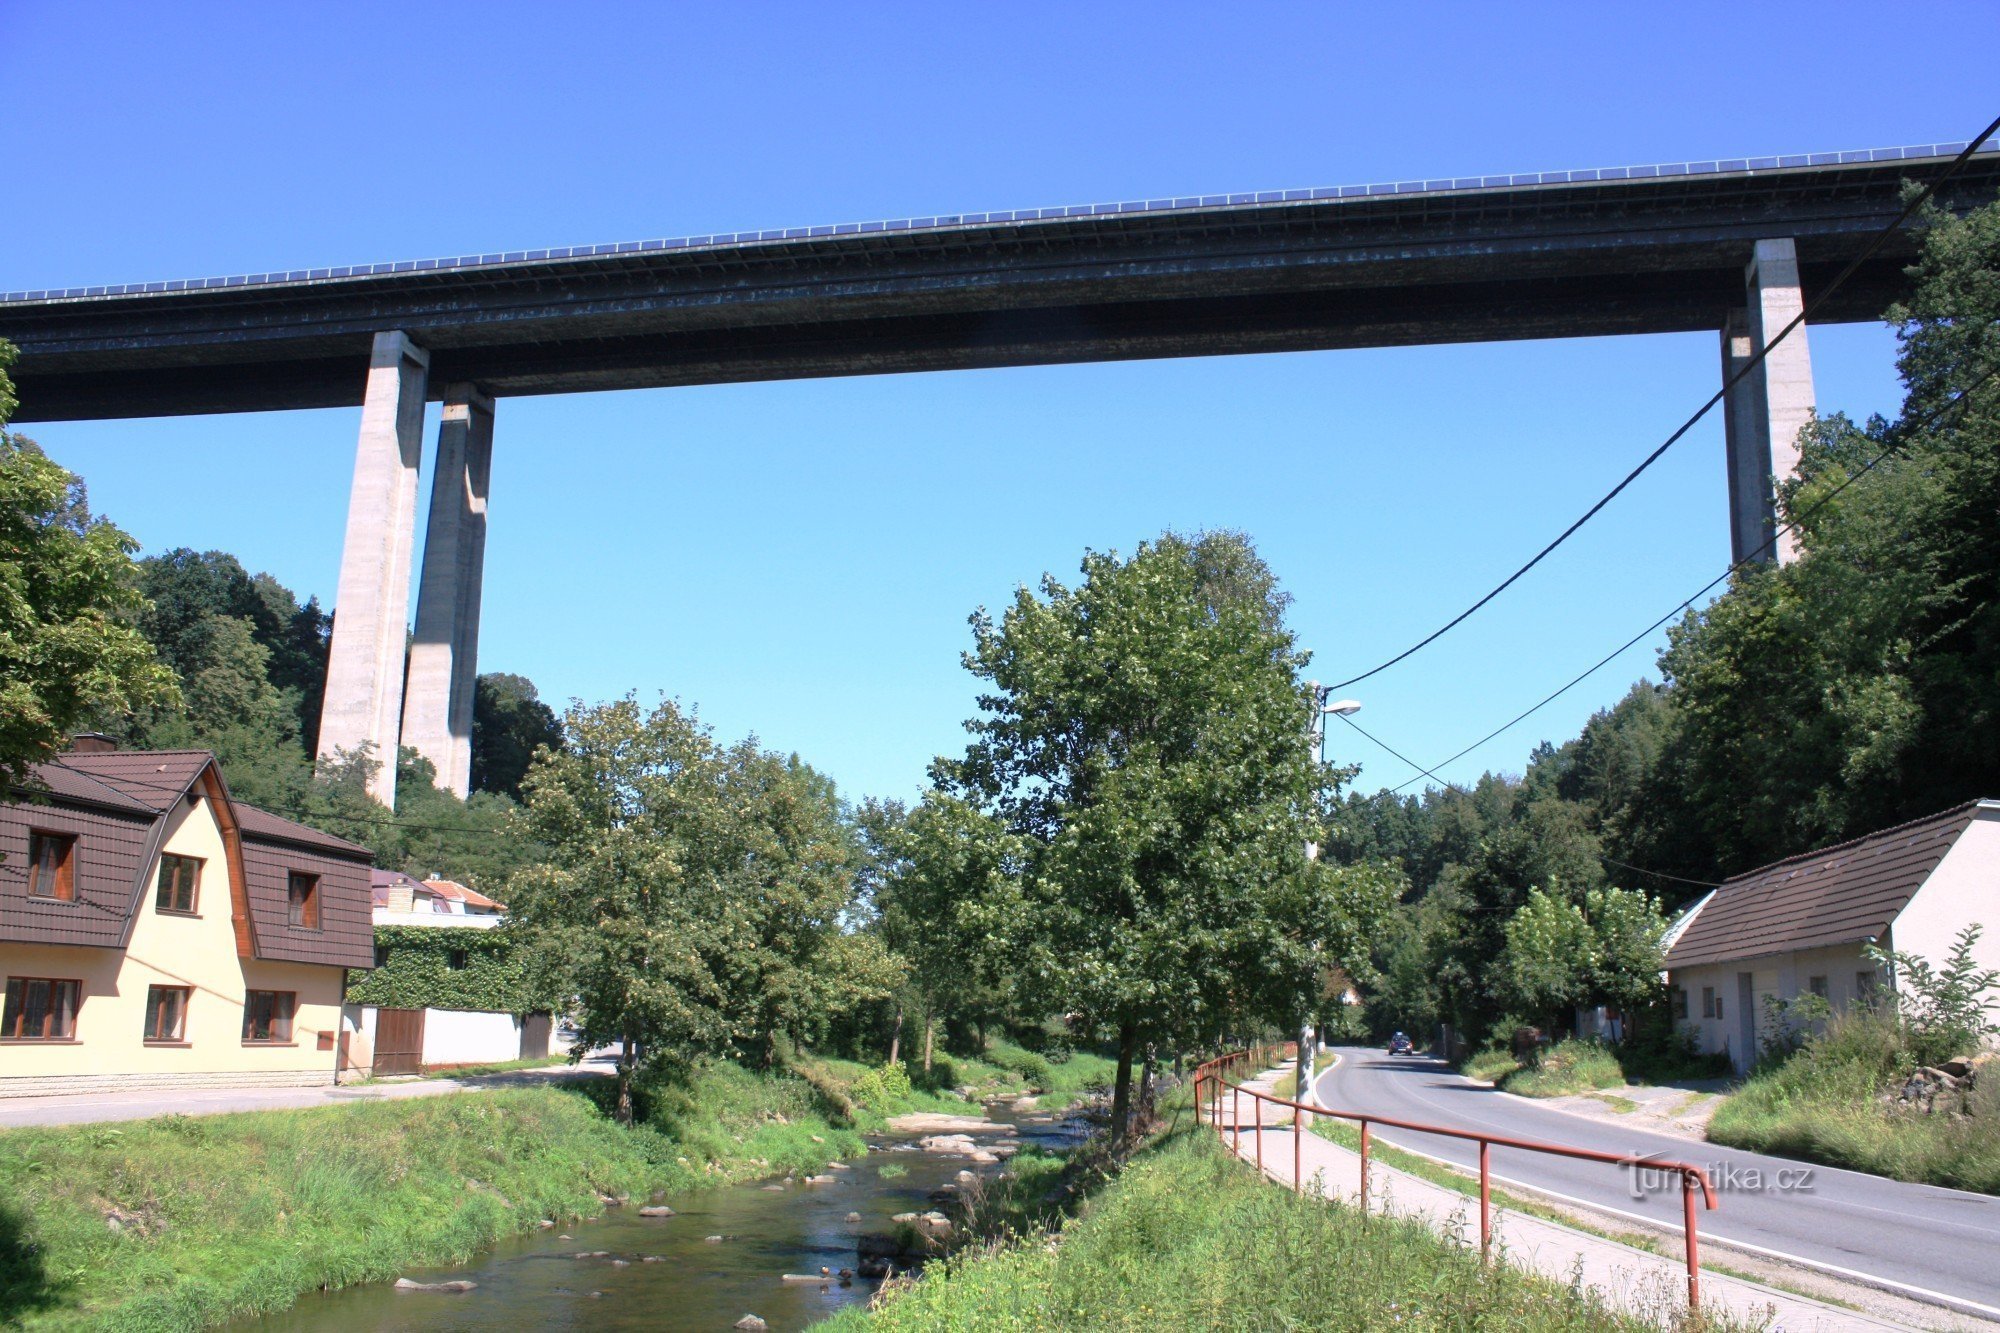 Velké Meziříčí - Vysočina highway bridge